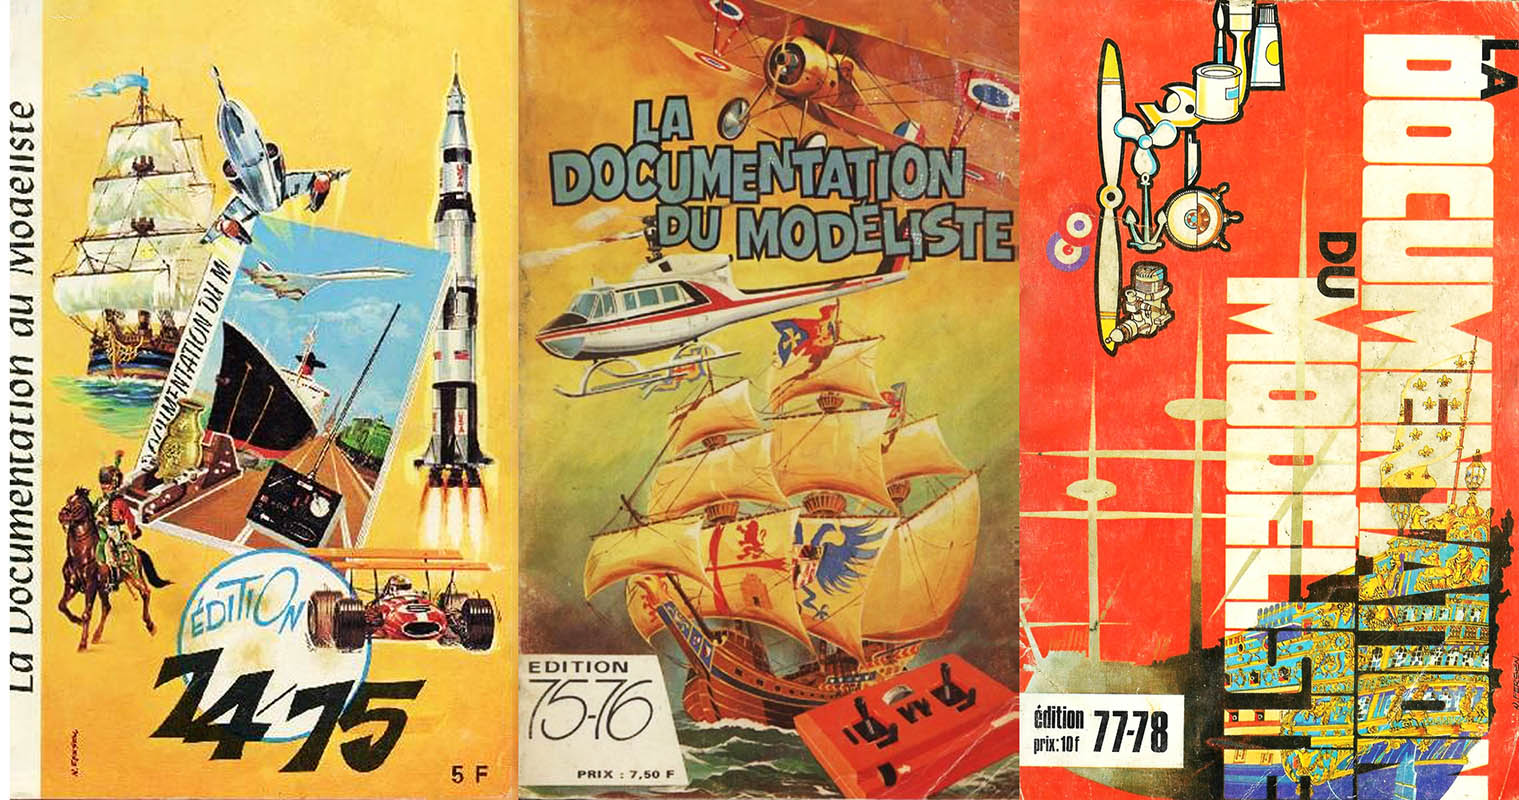 "À la source des inventions" : catalogues 1974/1975, 1975/1976, 1977/1978 - La documentation du modéliste.